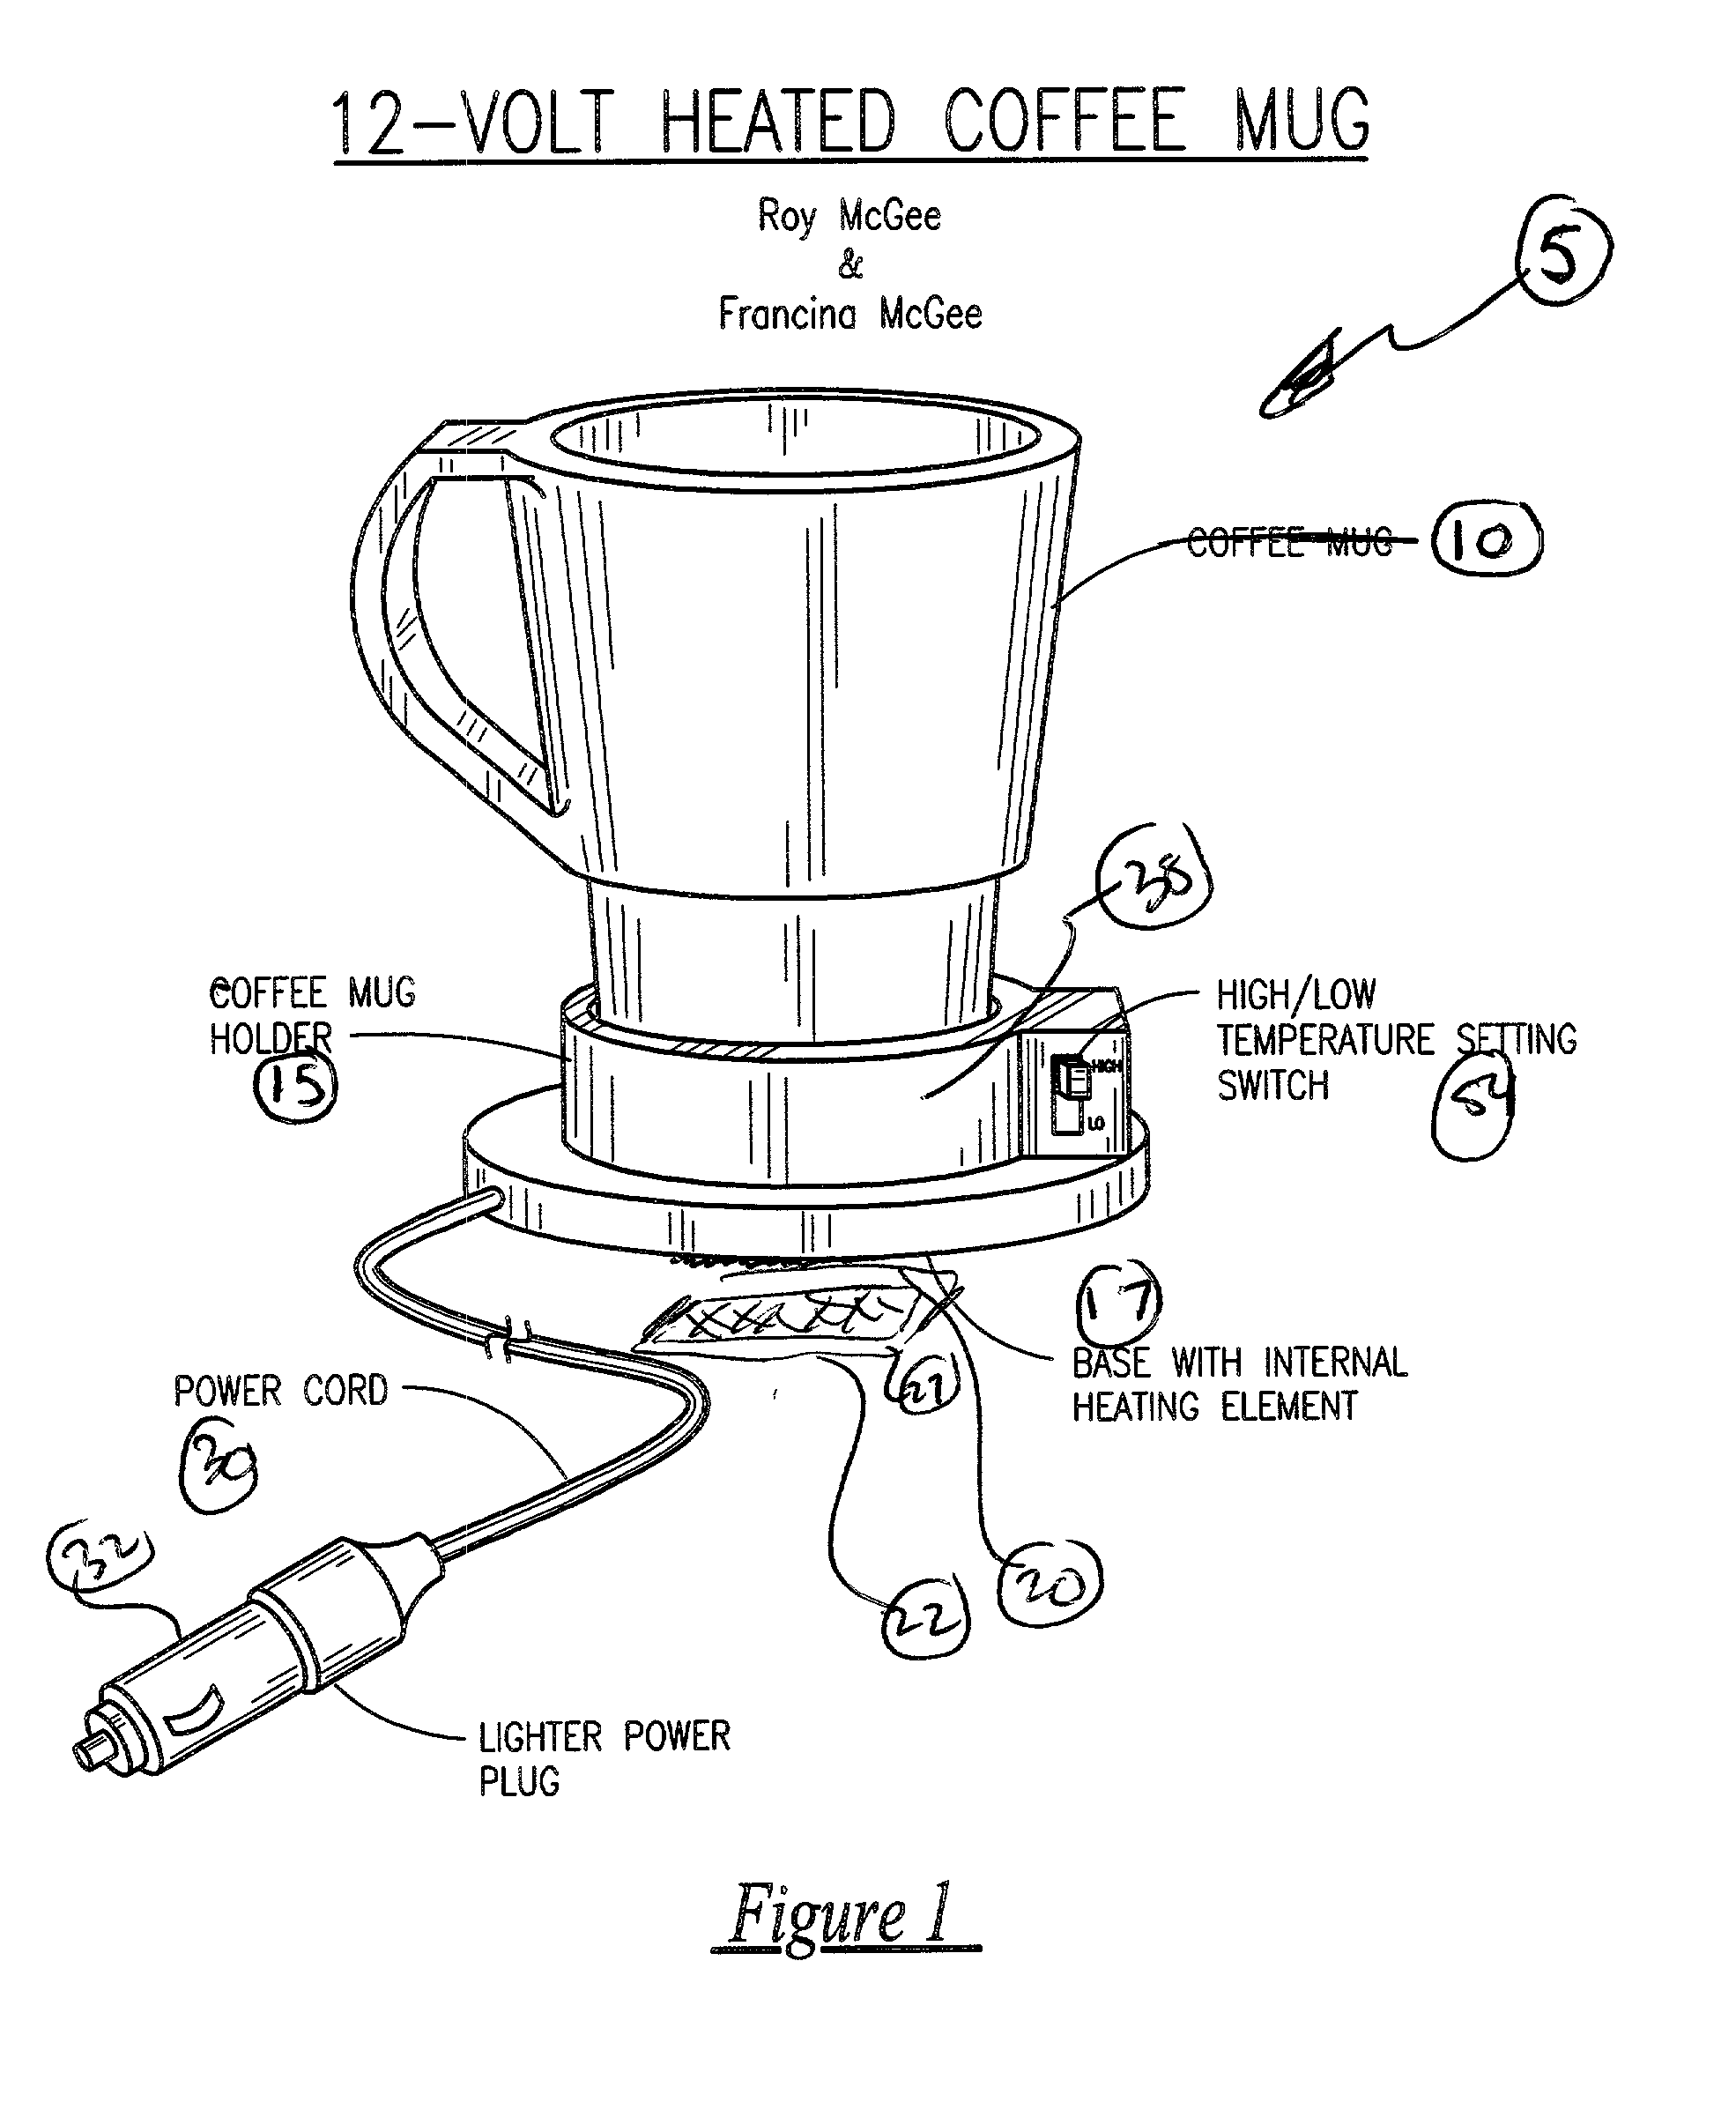 12-volt heated coffee mug